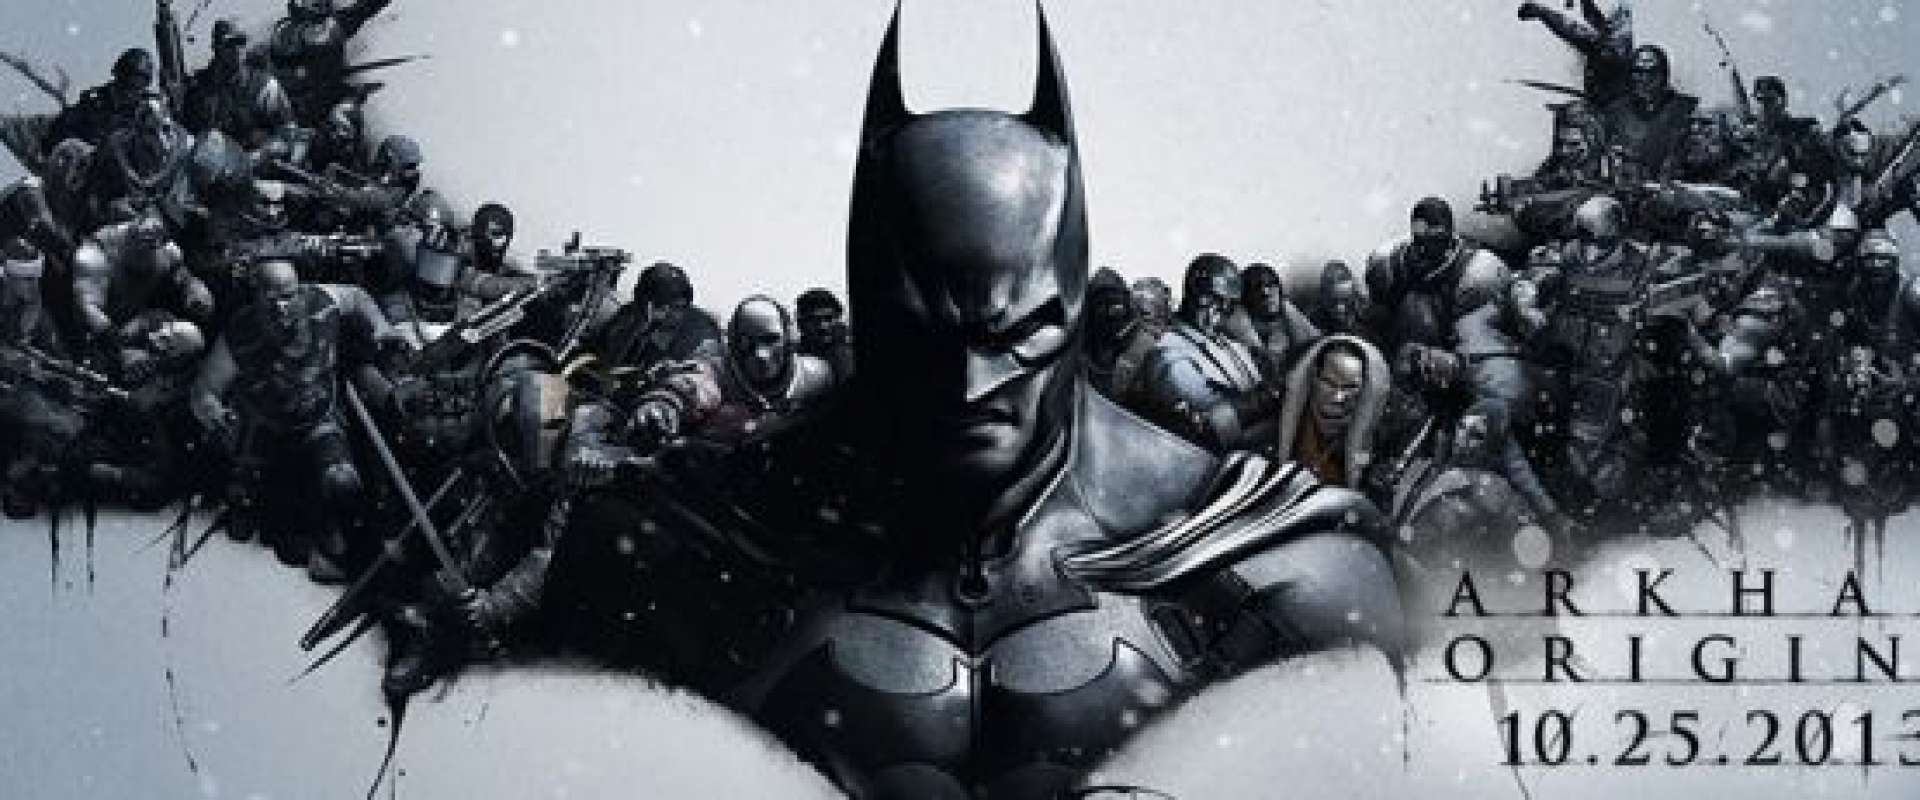 Tradução do Batman: Arkham Origins para Português do Brasil - Tribo Gamer